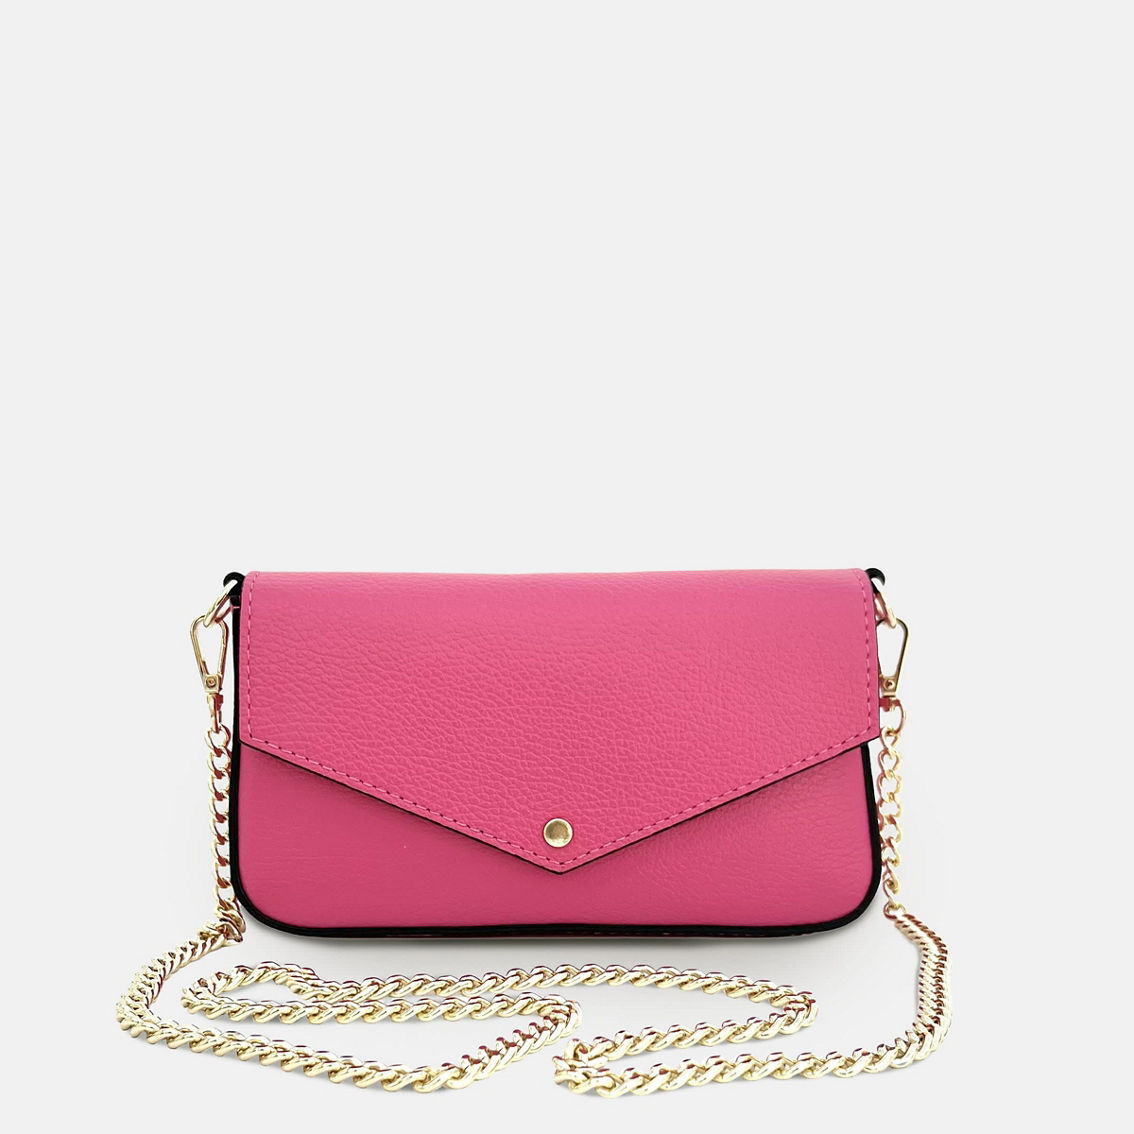 The Munro Barbie Pink Leather Shoulder Bag - Image 3 of 5